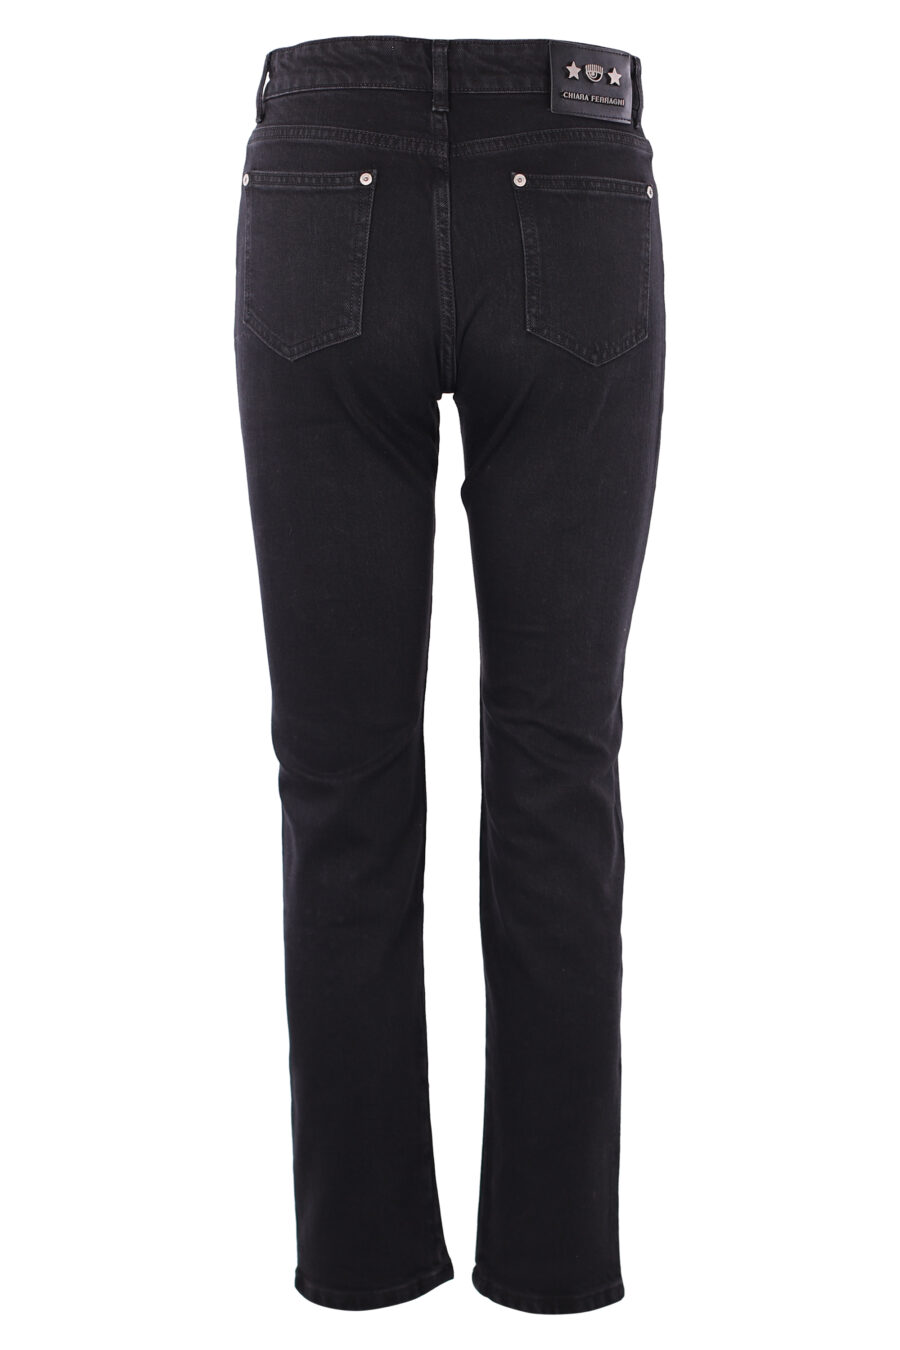 Schwarze Jeans mit Strasssteinen - IMG 6316